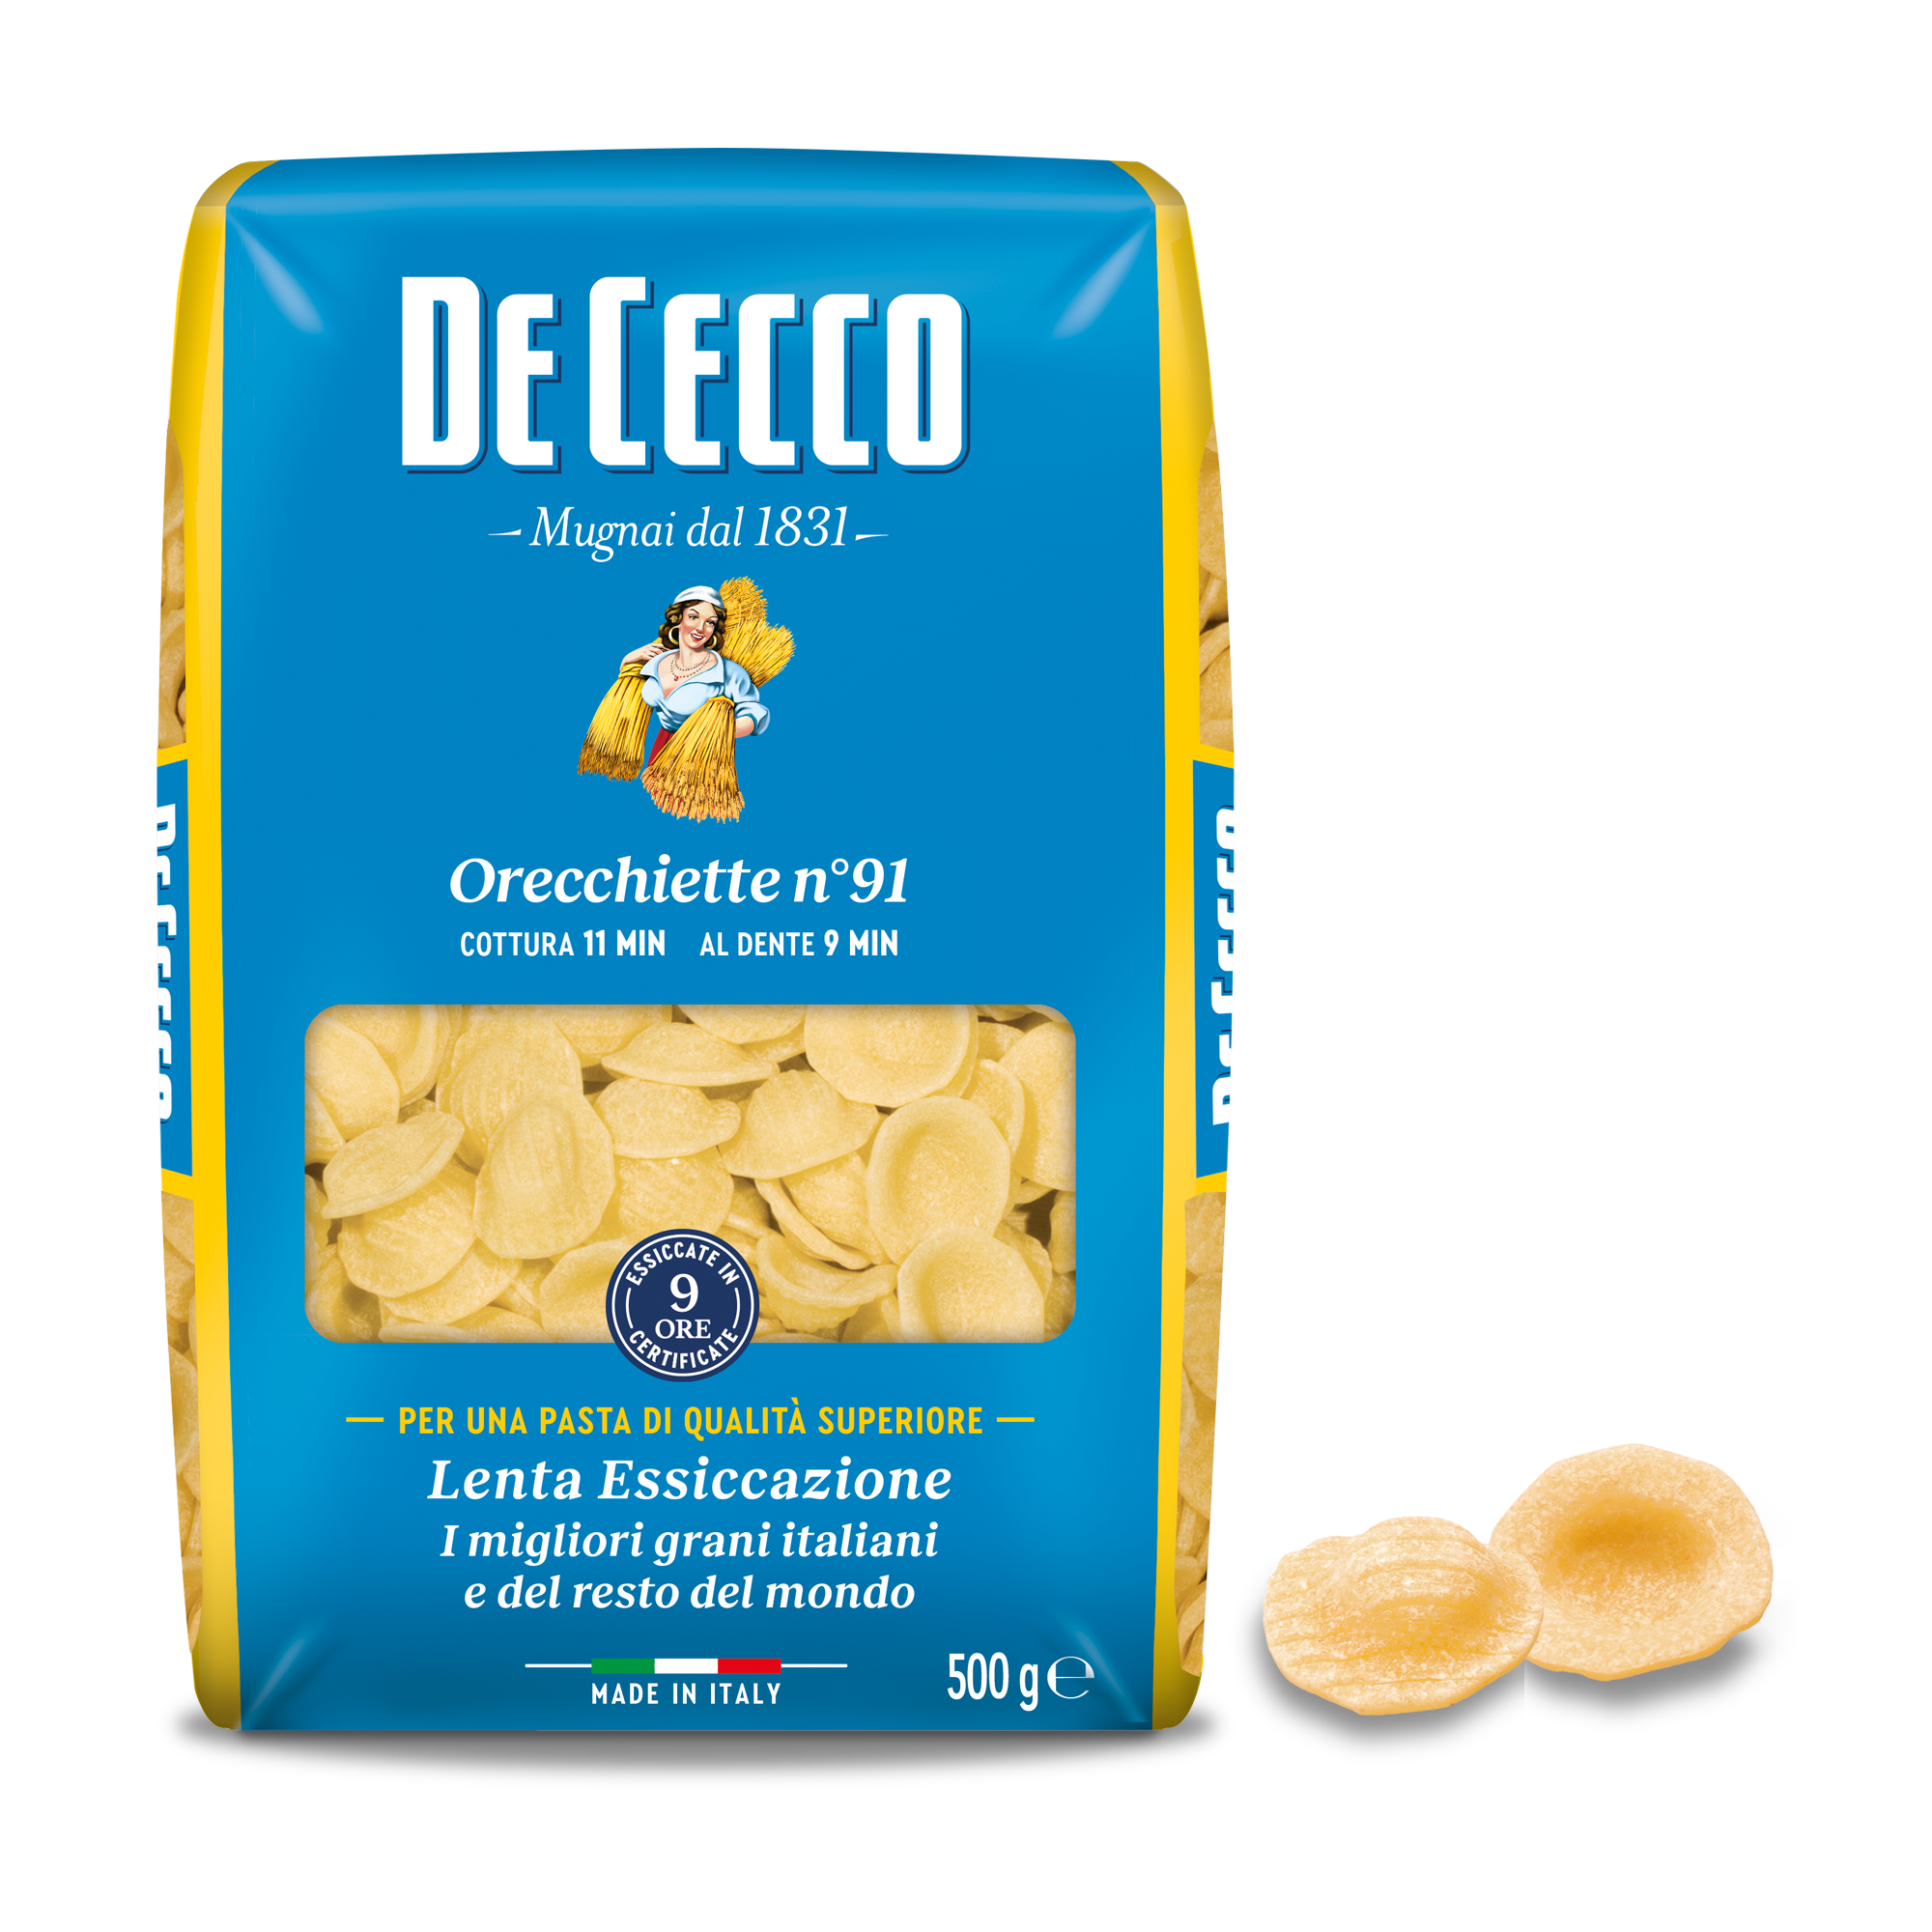 Pasta - De Cecco